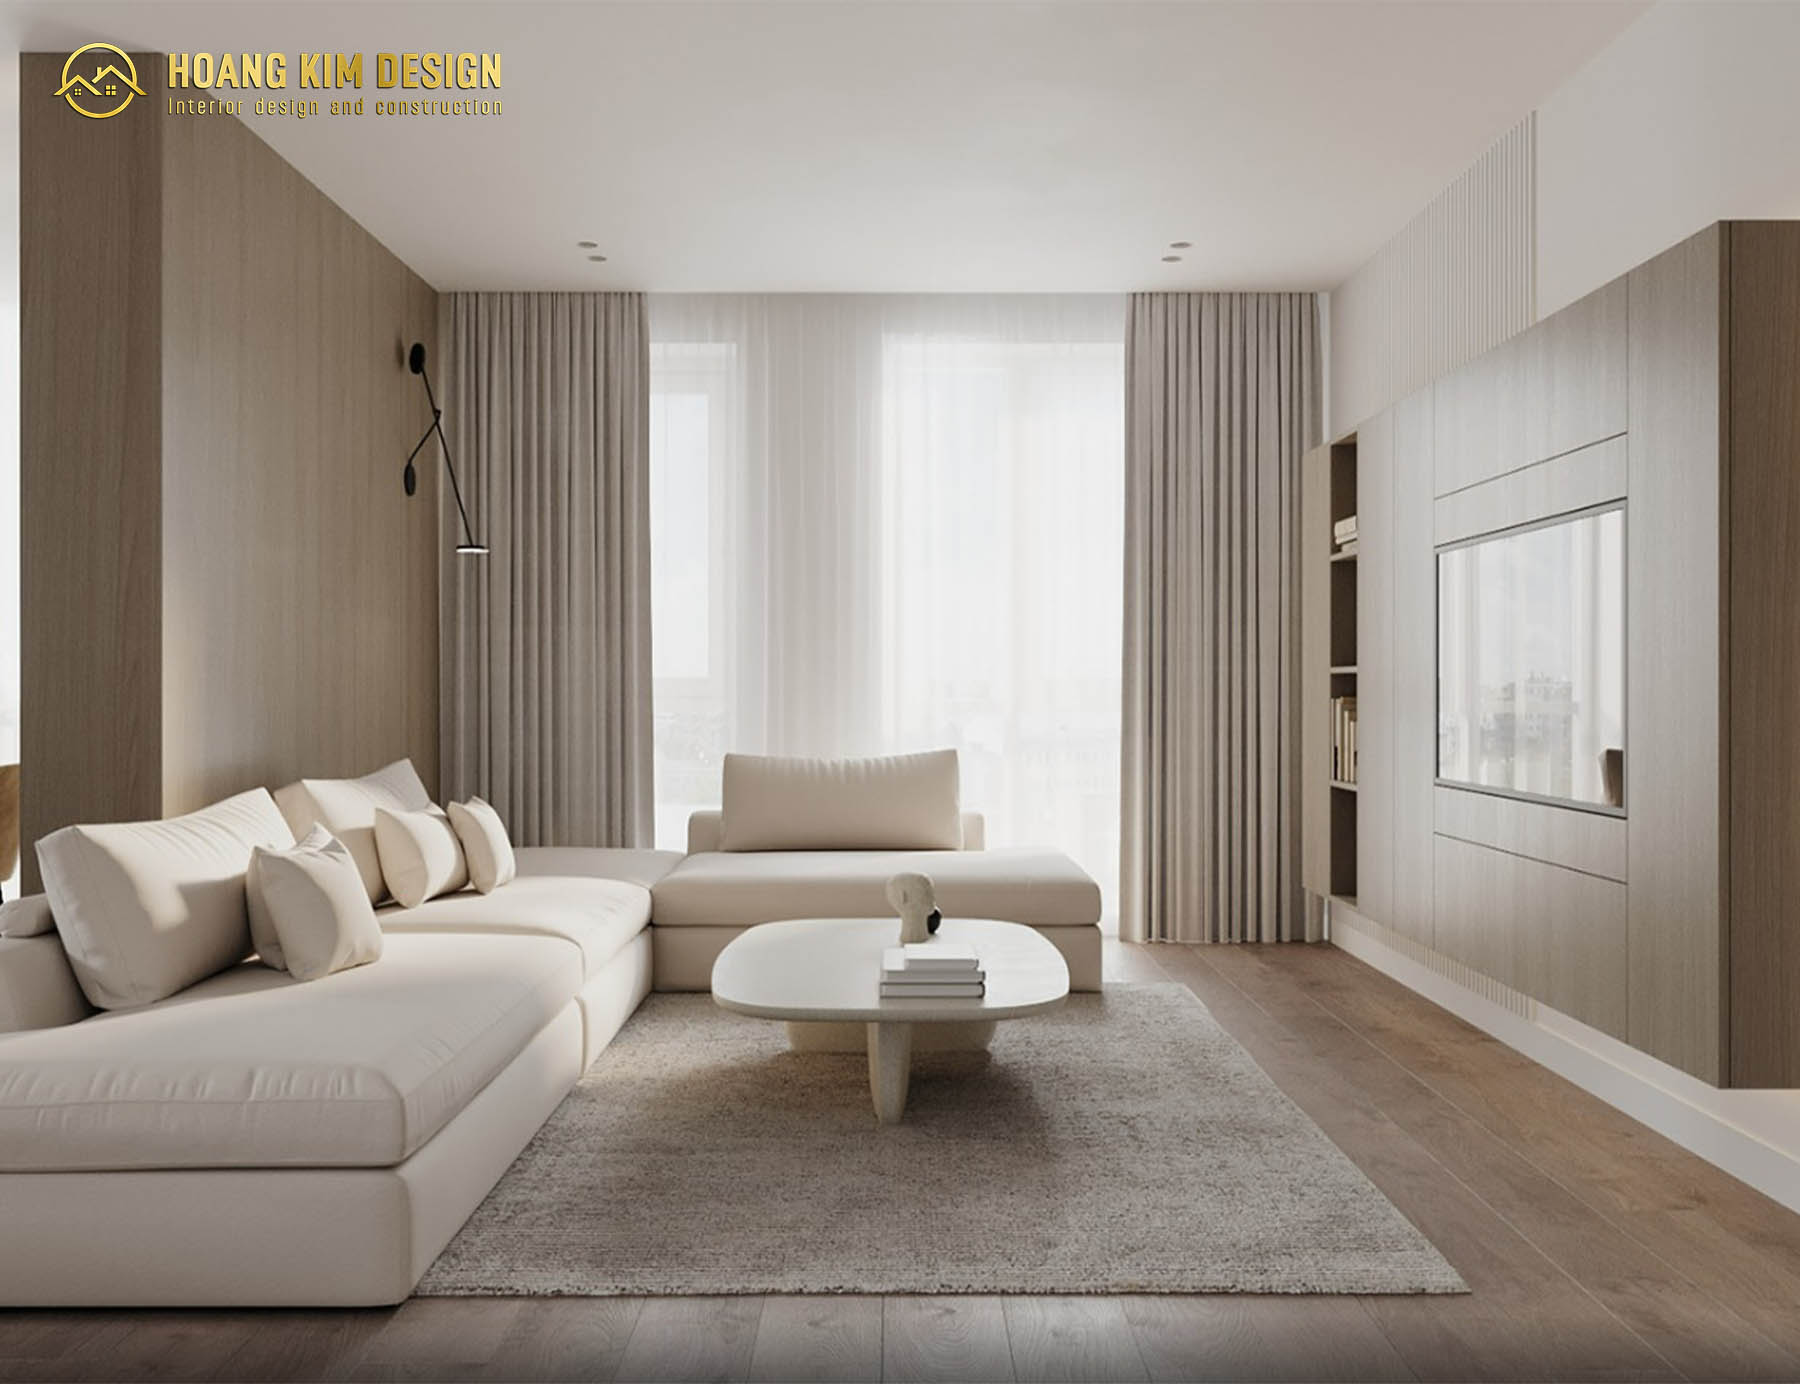 Ánh sáng là một trong những yếu tố quan trọng khi bố trí nội thất theo phong cách minimalism